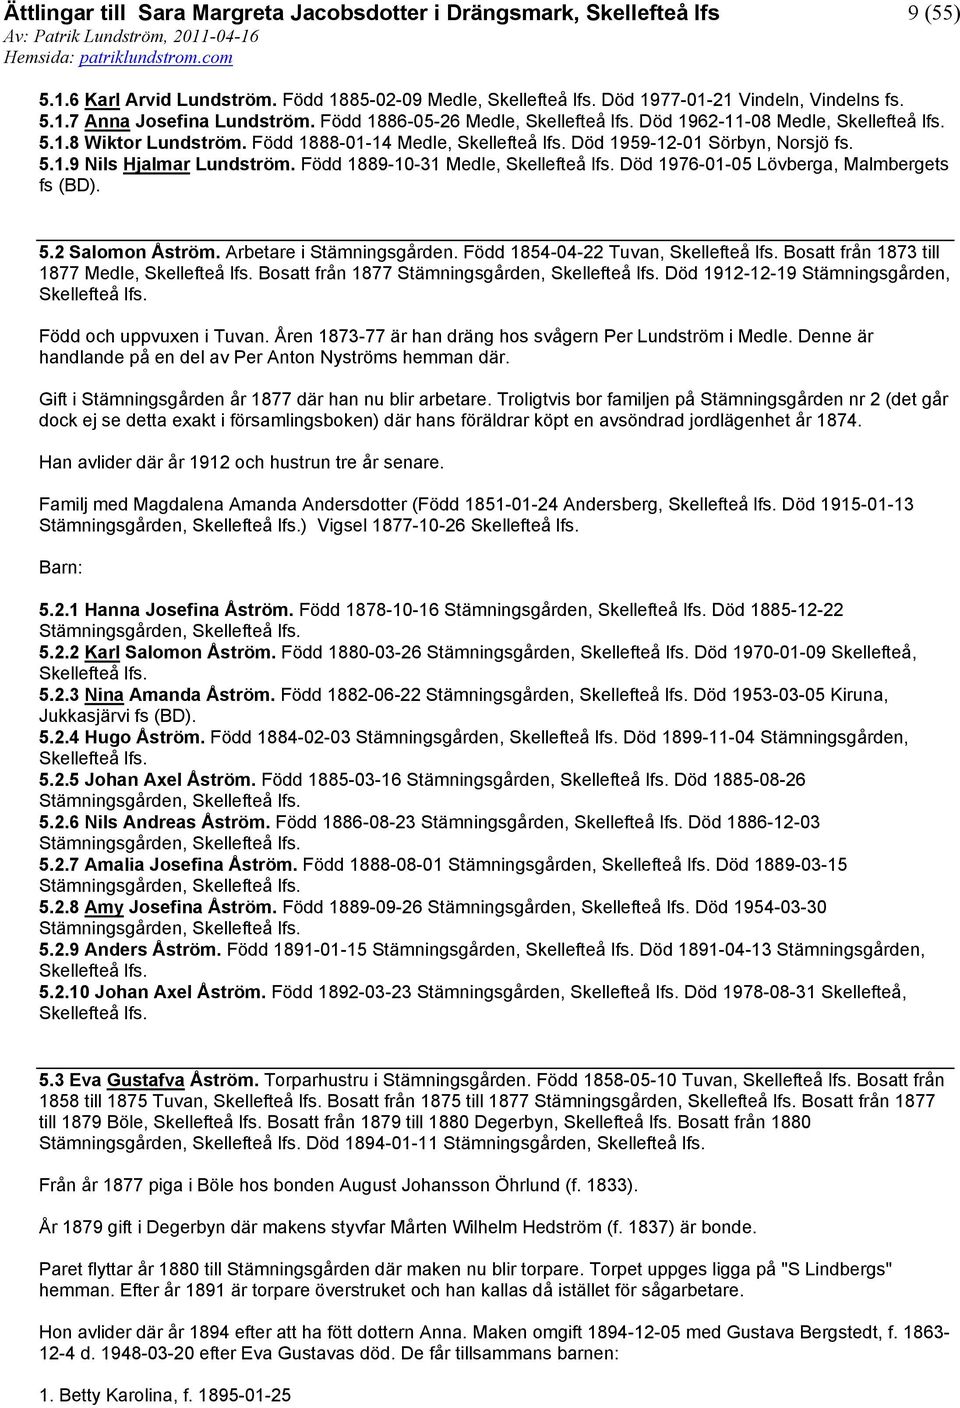 Arbetare i Stämningsgården. Född 1854-04-22 Tuvan, Bosatt från 1873 till 1877 Medle, Bosatt från 1877 Stämningsgården, Död 1912-12-19 Stämningsgården, Född och uppvuxen i Tuvan.